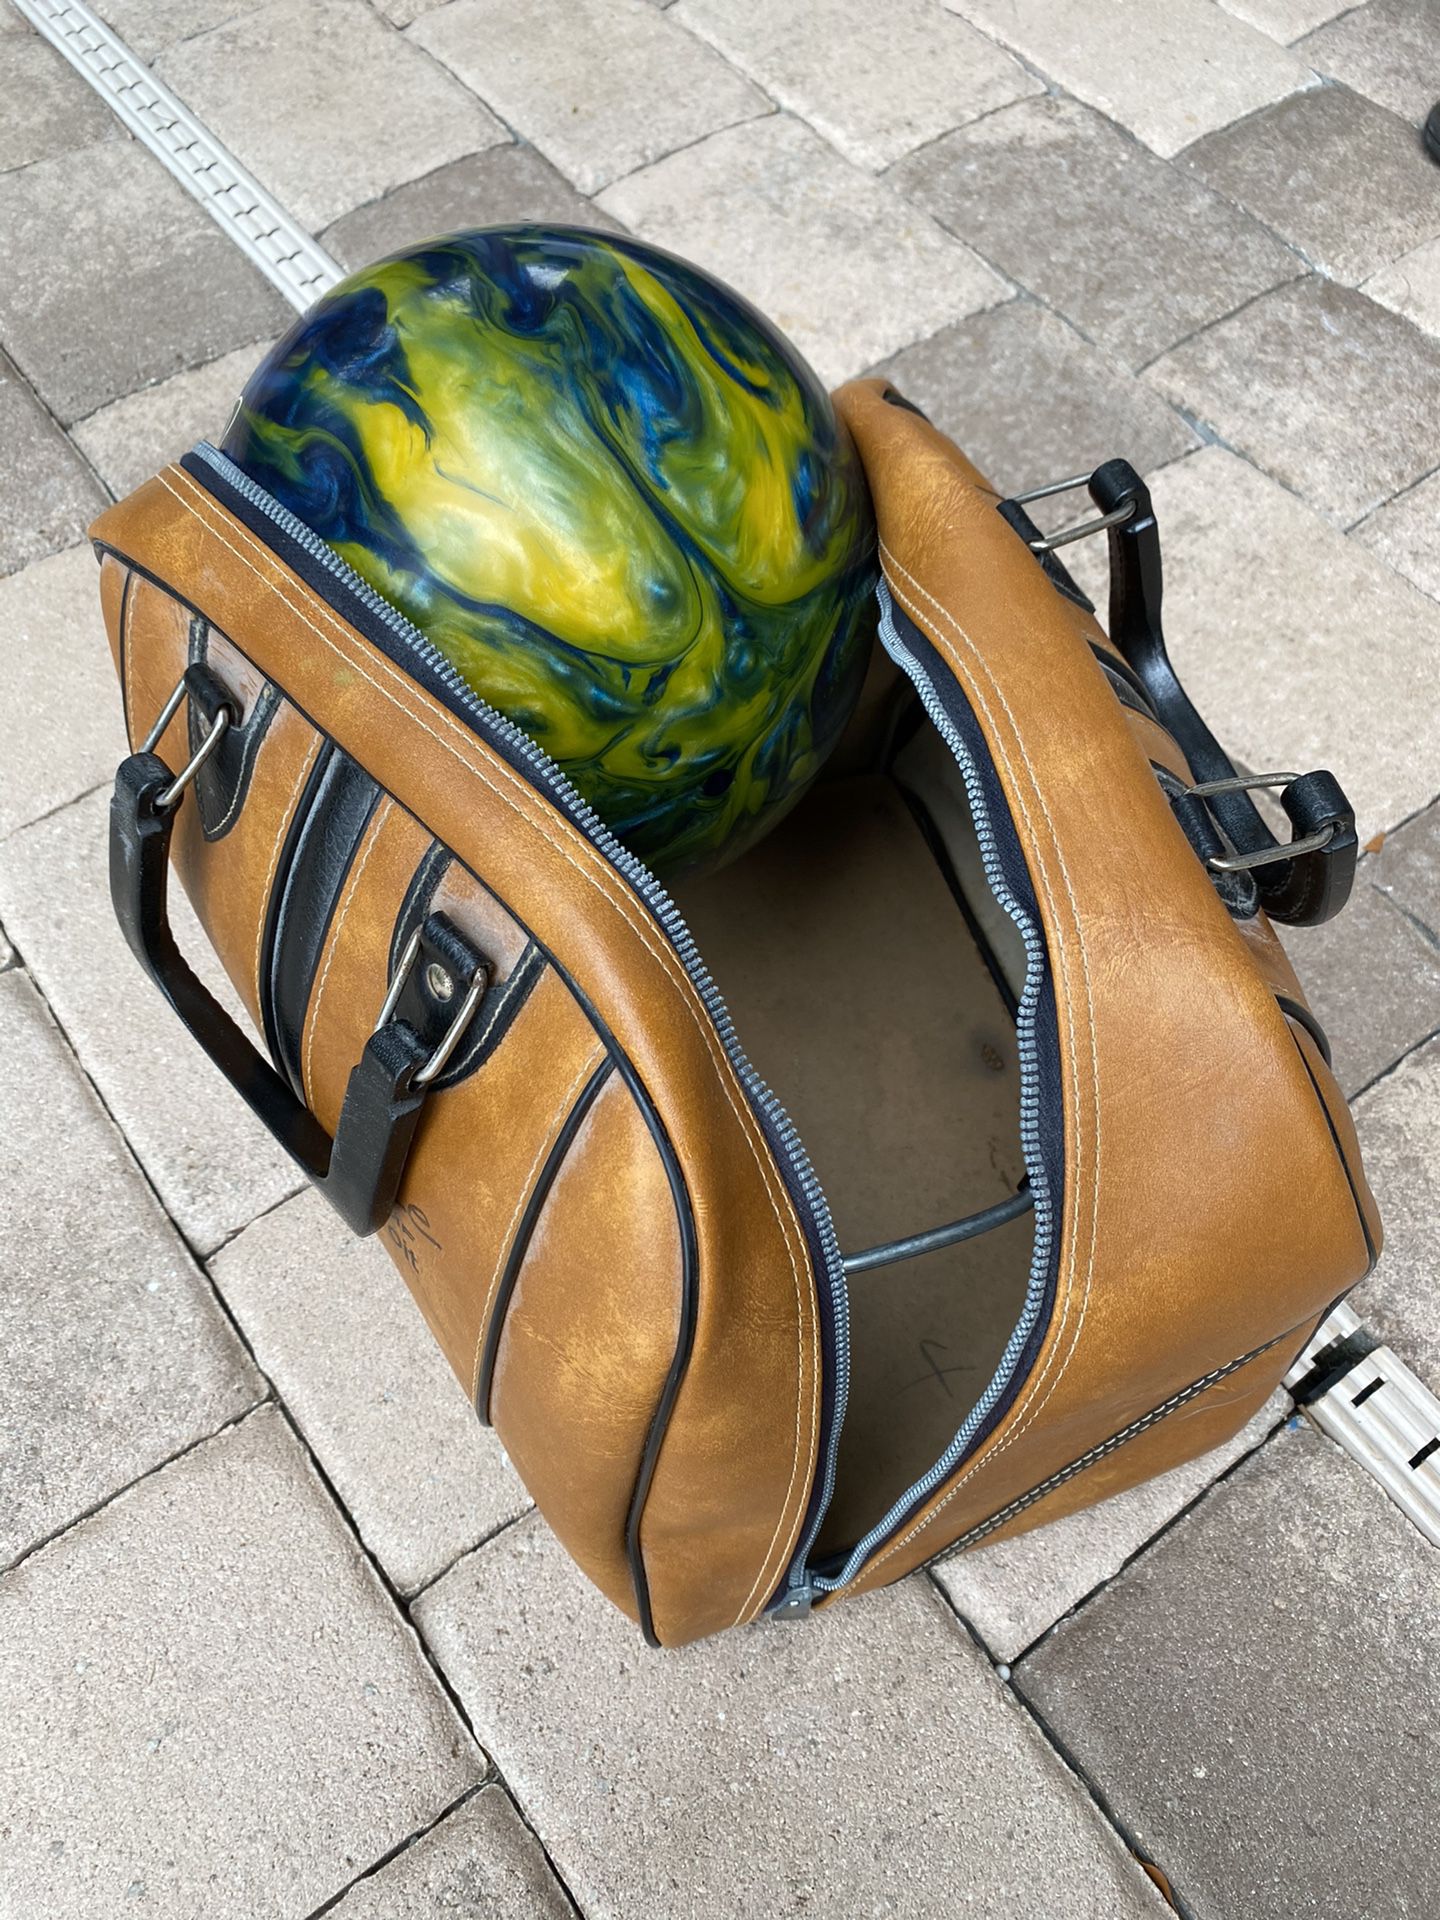 Bowling ball and bag